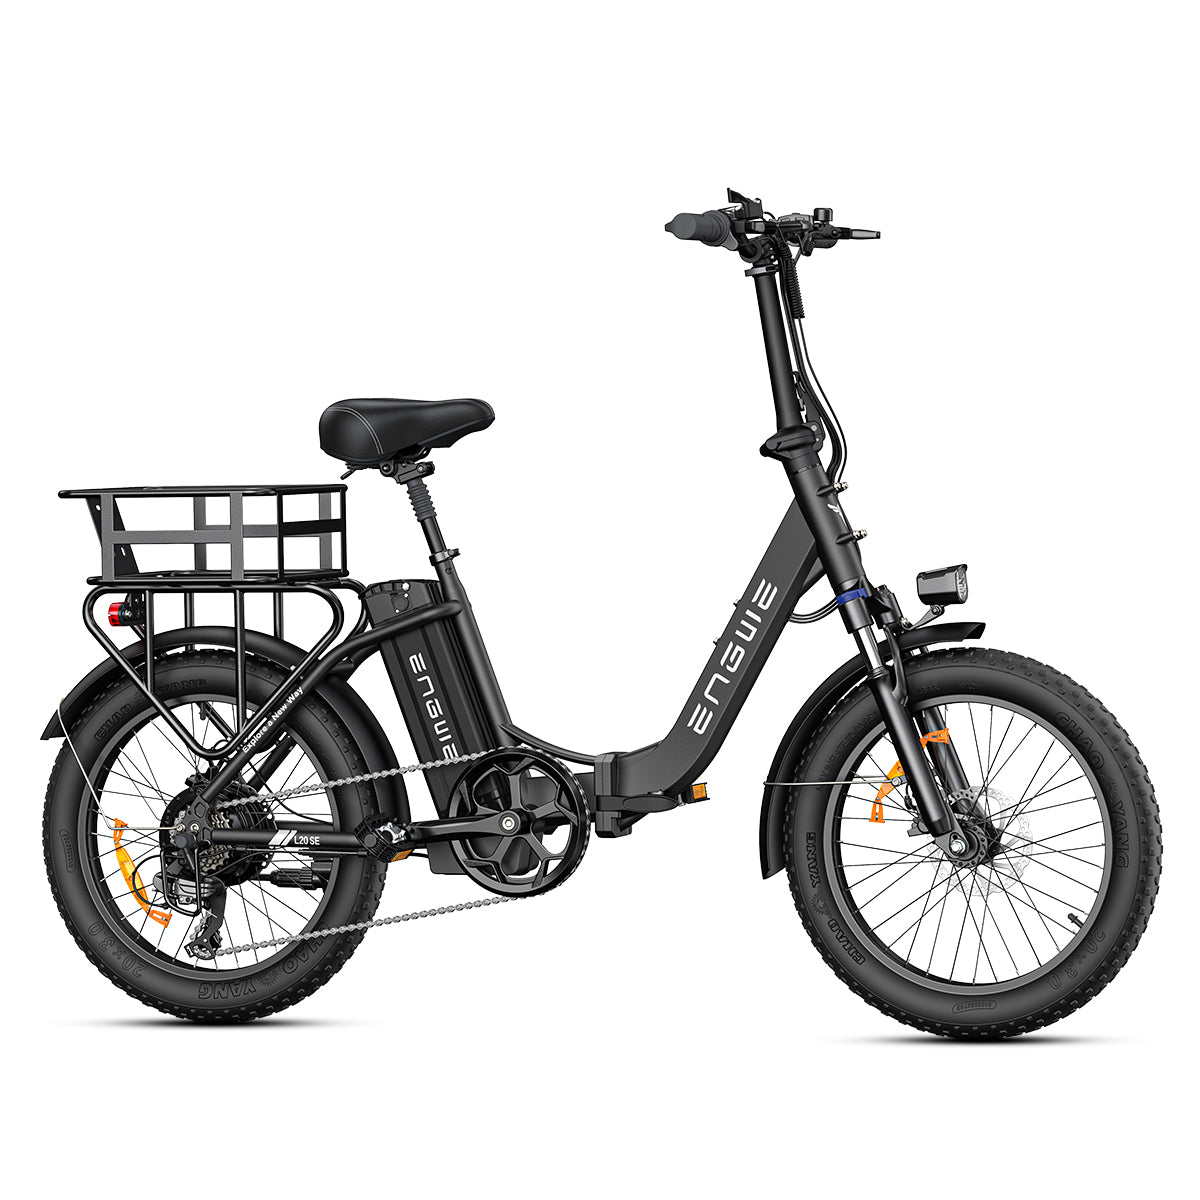 Engwe L20 SE 250W 20" Bicicletta Elettrica Pieghevole da Trekking 15.6Ah E-bike Passo-passo [Pre-Order]